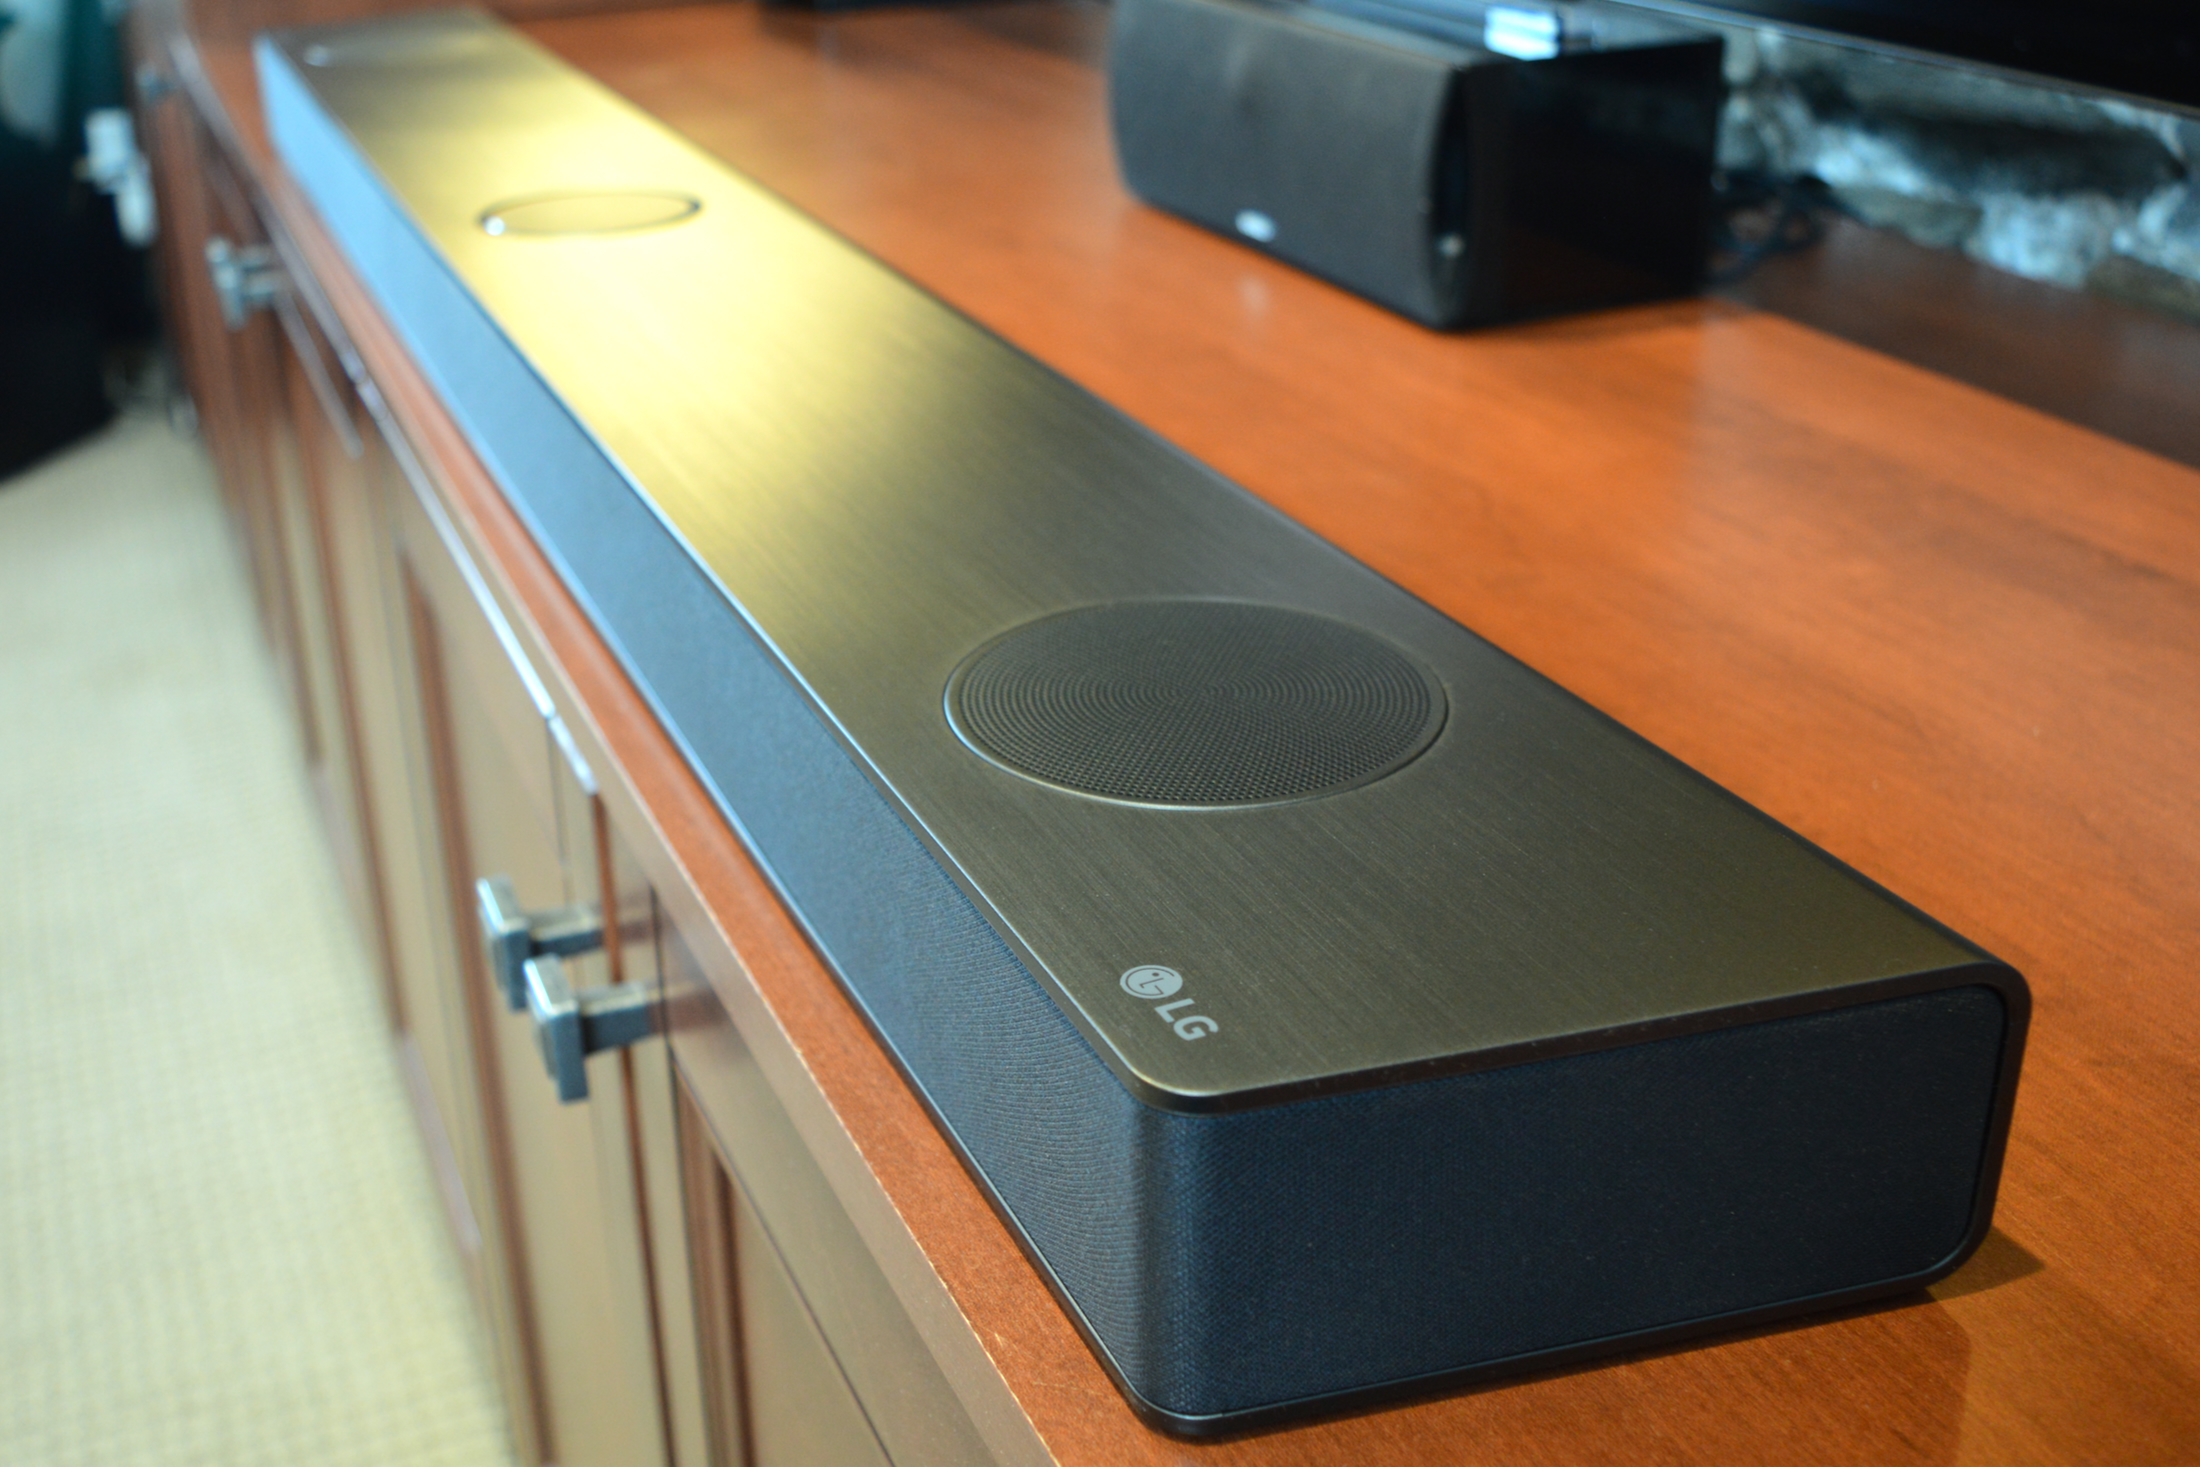 LG review: LG now makes a curved soundbar, too - CNET